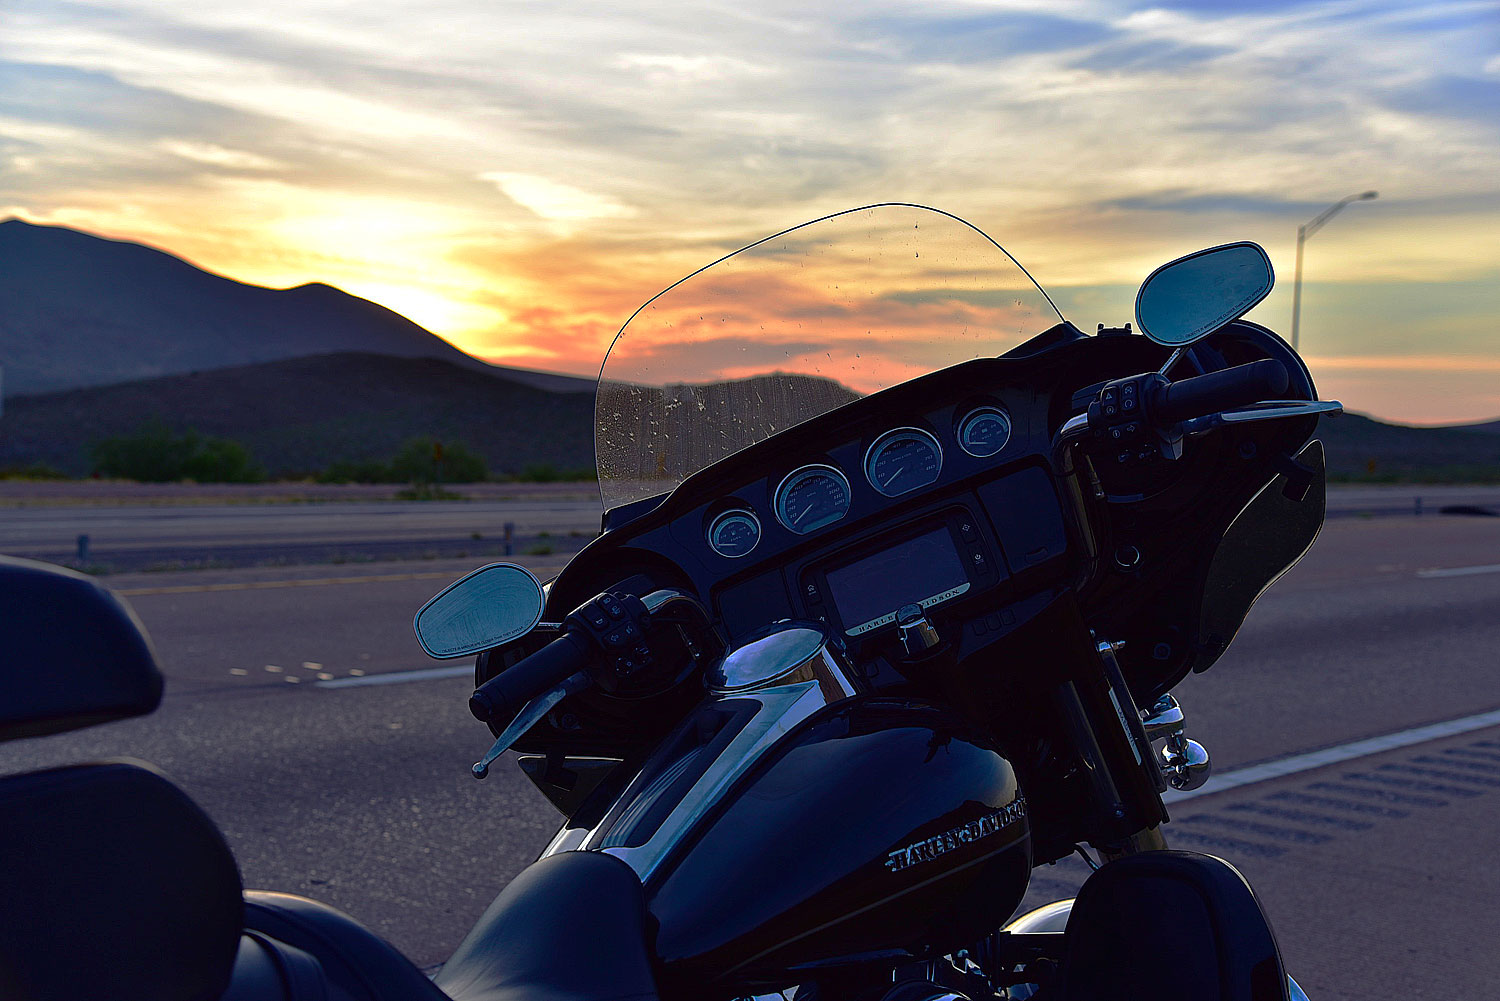 Sunrise motorcycle ride